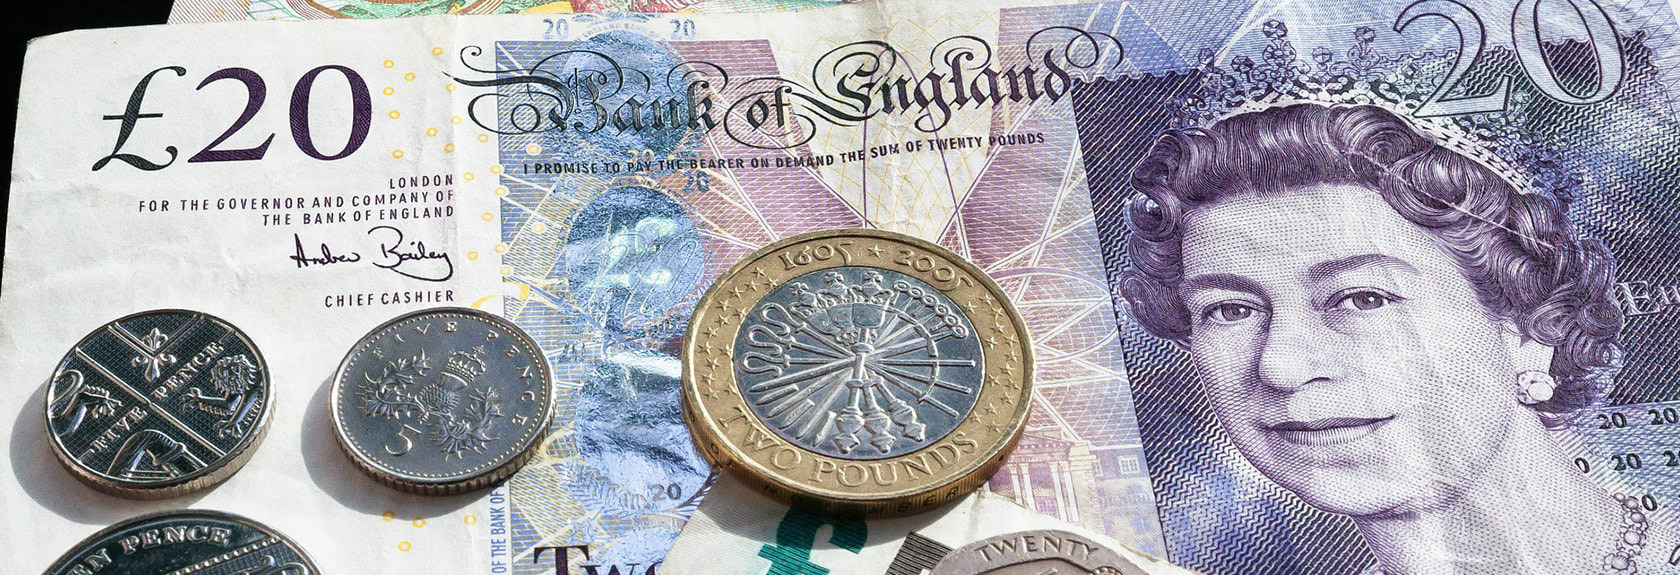 A moeda oficial do Reino Unido é a Libra, abreviada para GBP ou £. A Libra também é chamada de Libra Britânica ou Libra Inglesa, mas oficialmente a Libra Britânica é chamada de Libra Esterlina. Entretanto, este nome é muito raro, em linguagem popular é simplesmente referido como a libra quando se fala sobre a moeda.